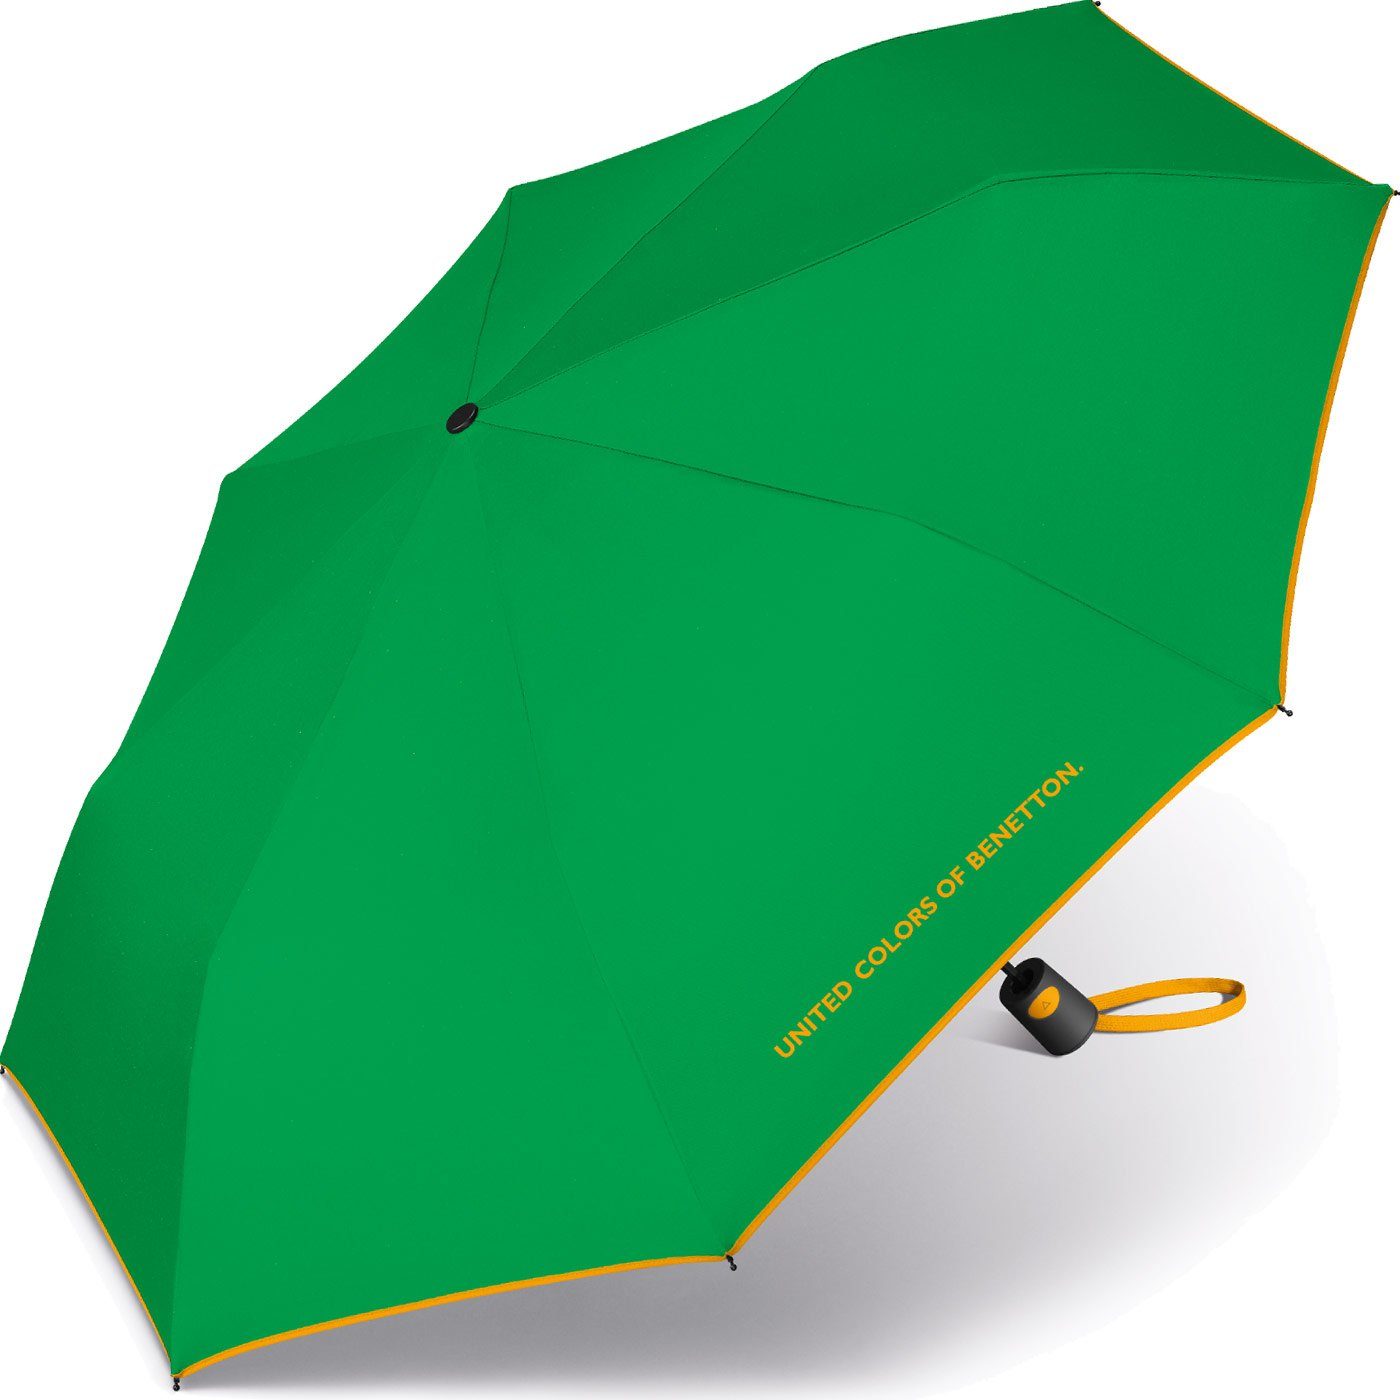 Benetton Damen-Regenschirm am Schirmrand mit mit of Taschenregenschirm Auf-Automatik, schöner United Colors - grün-gelb Kontrastfarben